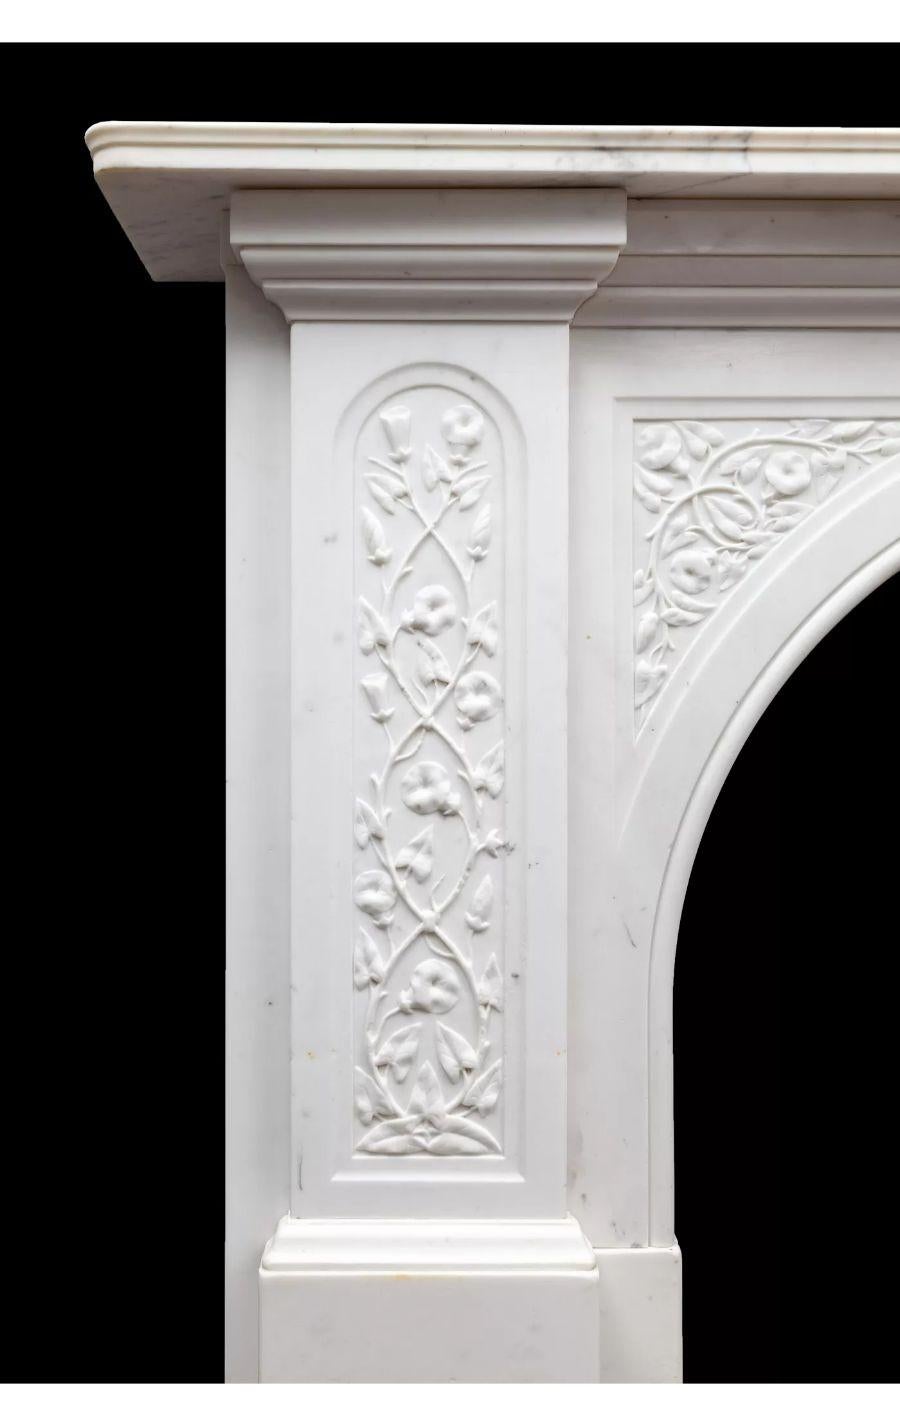 Cheminée ancienne victorienne en marbre Statuaire Carrara magnifiquement sculpté, vers 1880

Une cheminée en marbre de Carrare, magnifiquement sculptée et proportionnée, de style Victorien Statuaire.

Les pilastres et les panneaux de l'arc en D sont